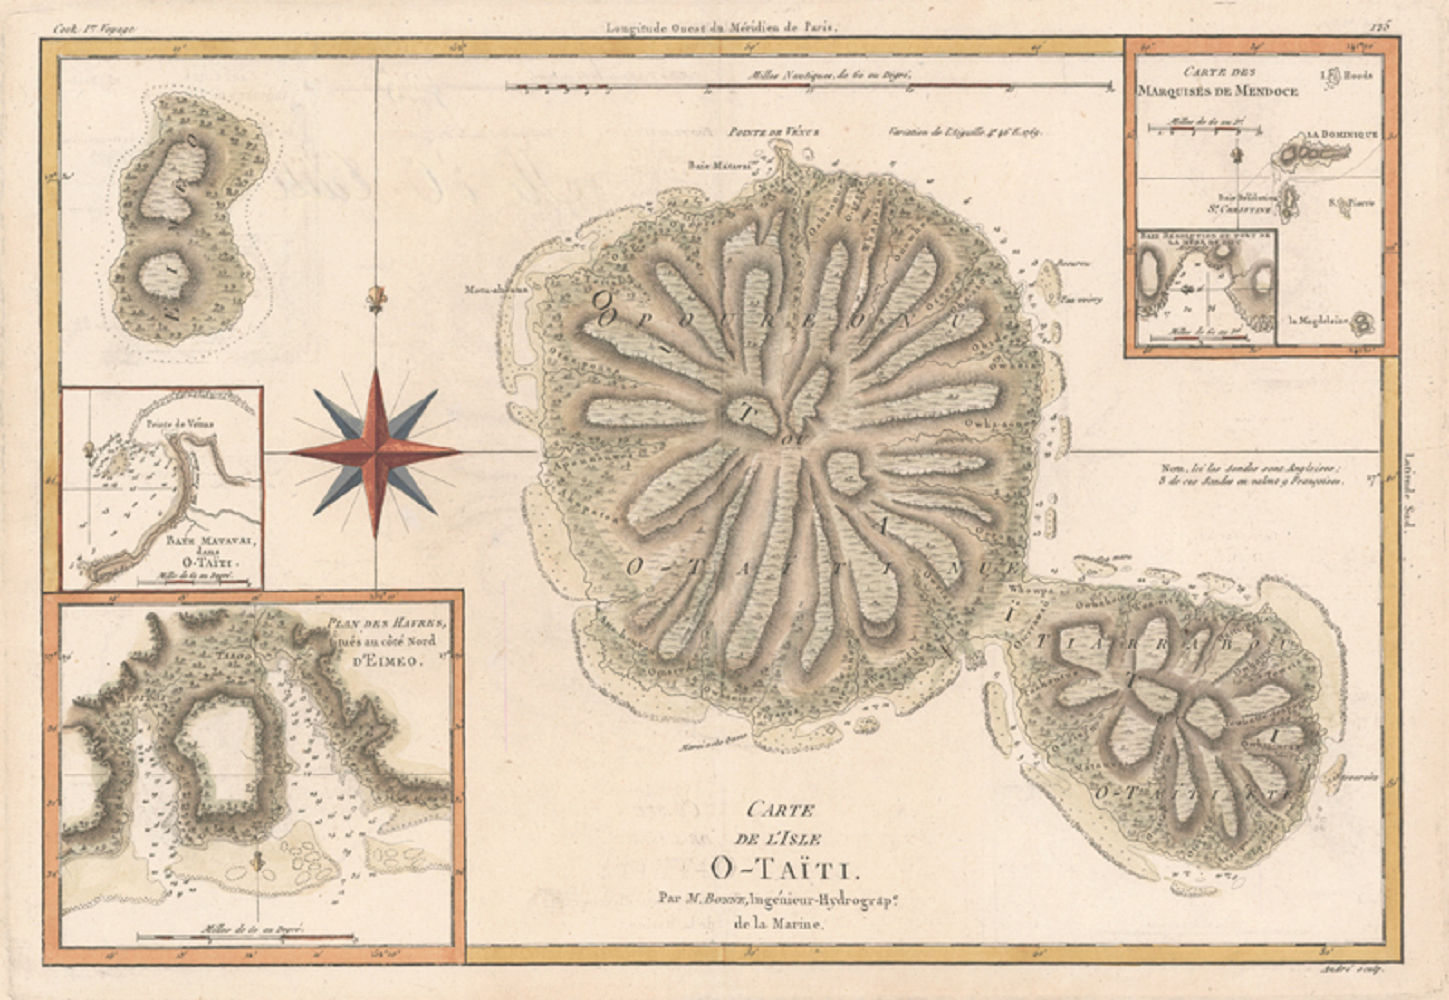 Francia se anexiona la isla del virrey Amat, actualmente Tahití